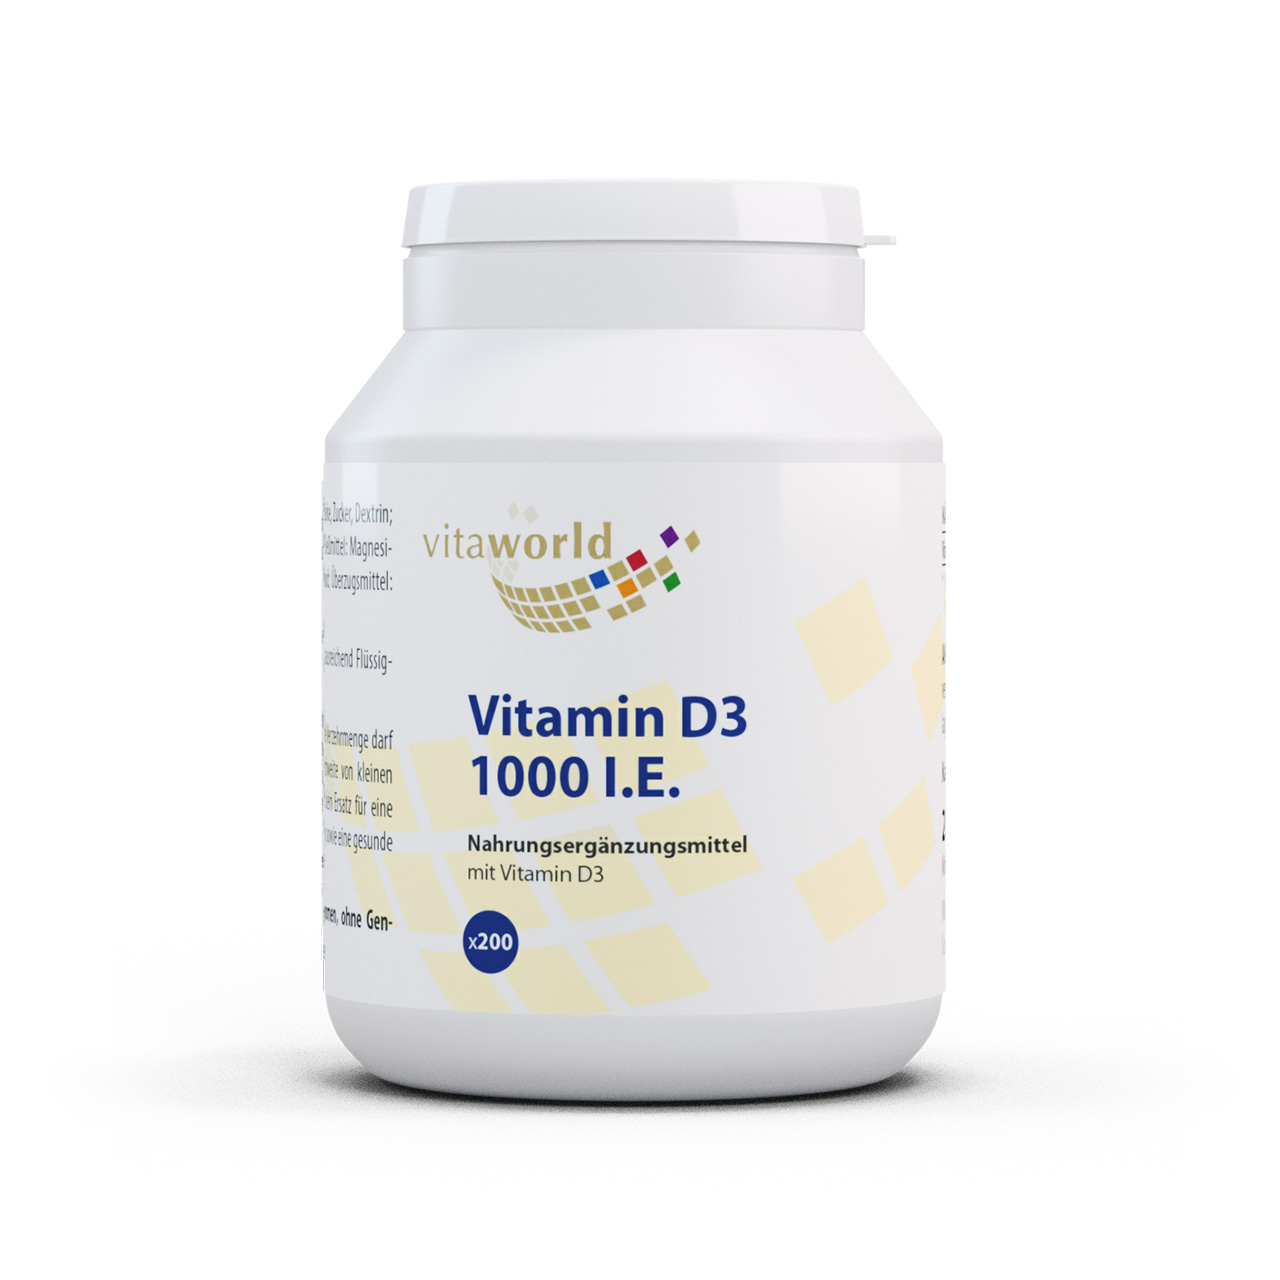 Vitaworld Vitamin D3 1000 I.E. | 200 Tabletten